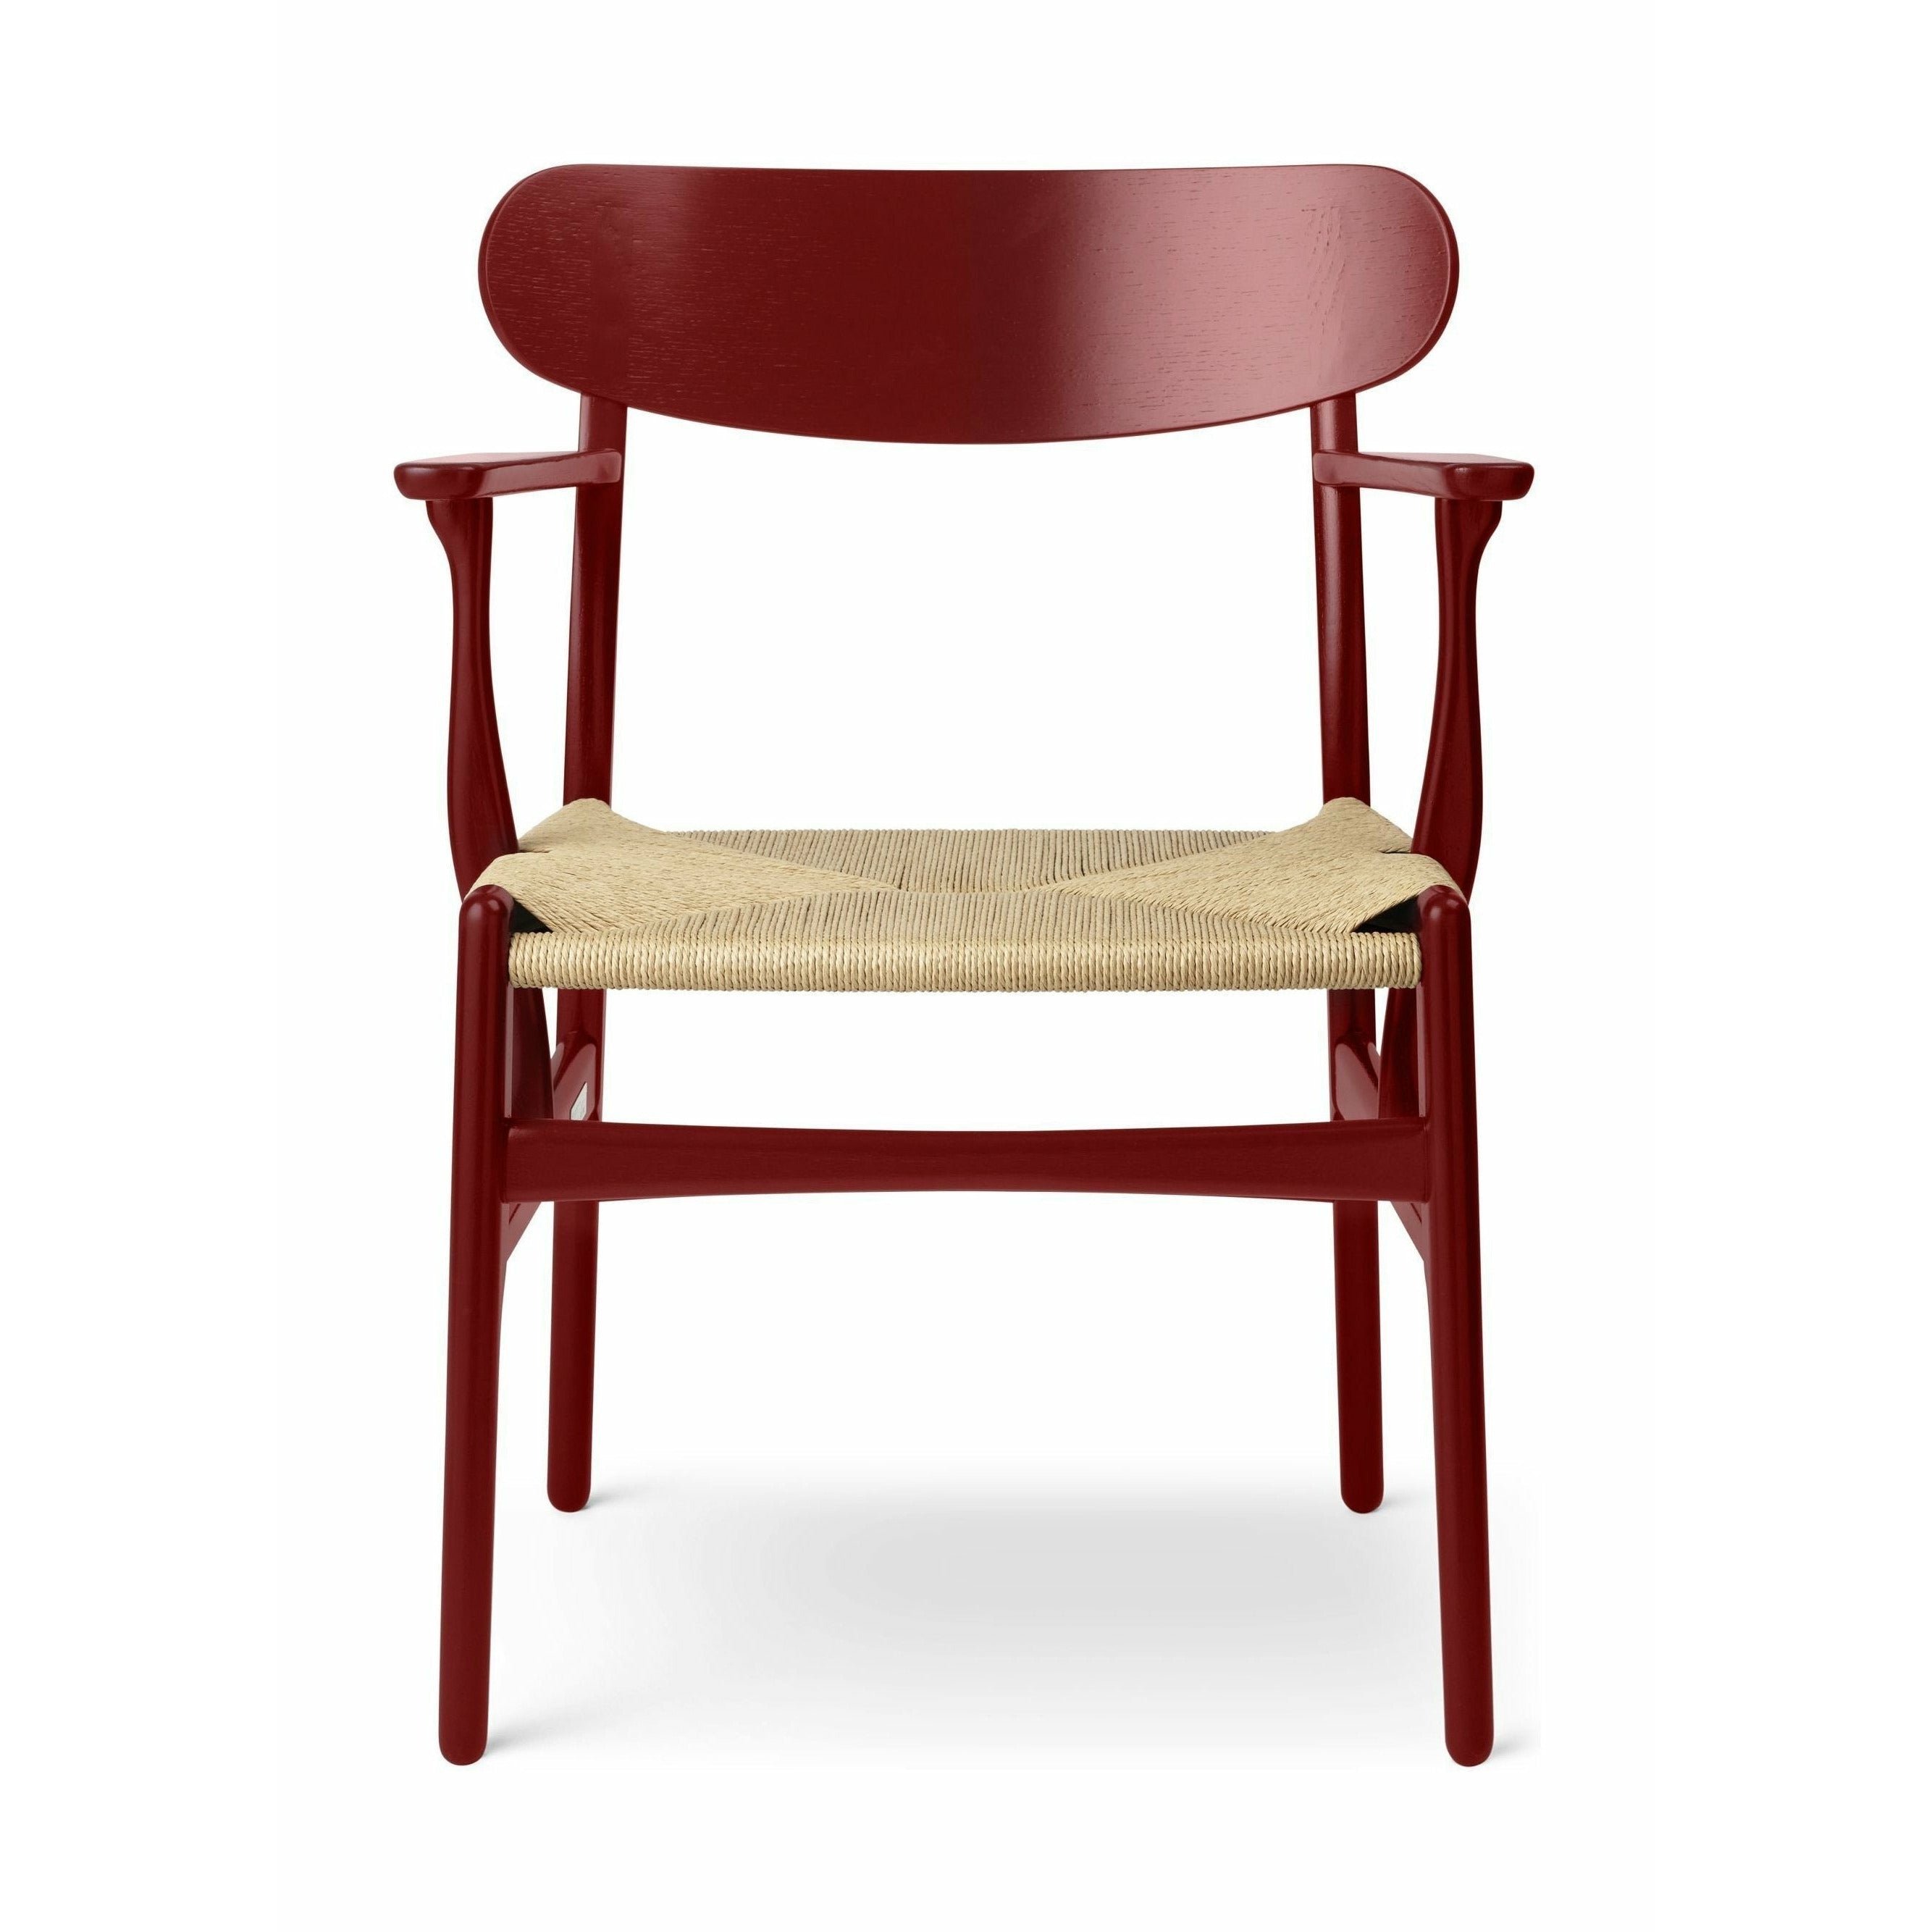 Carl Hansen CH26 Chair Oak, Falu Red/Nature Braid - Special Edition